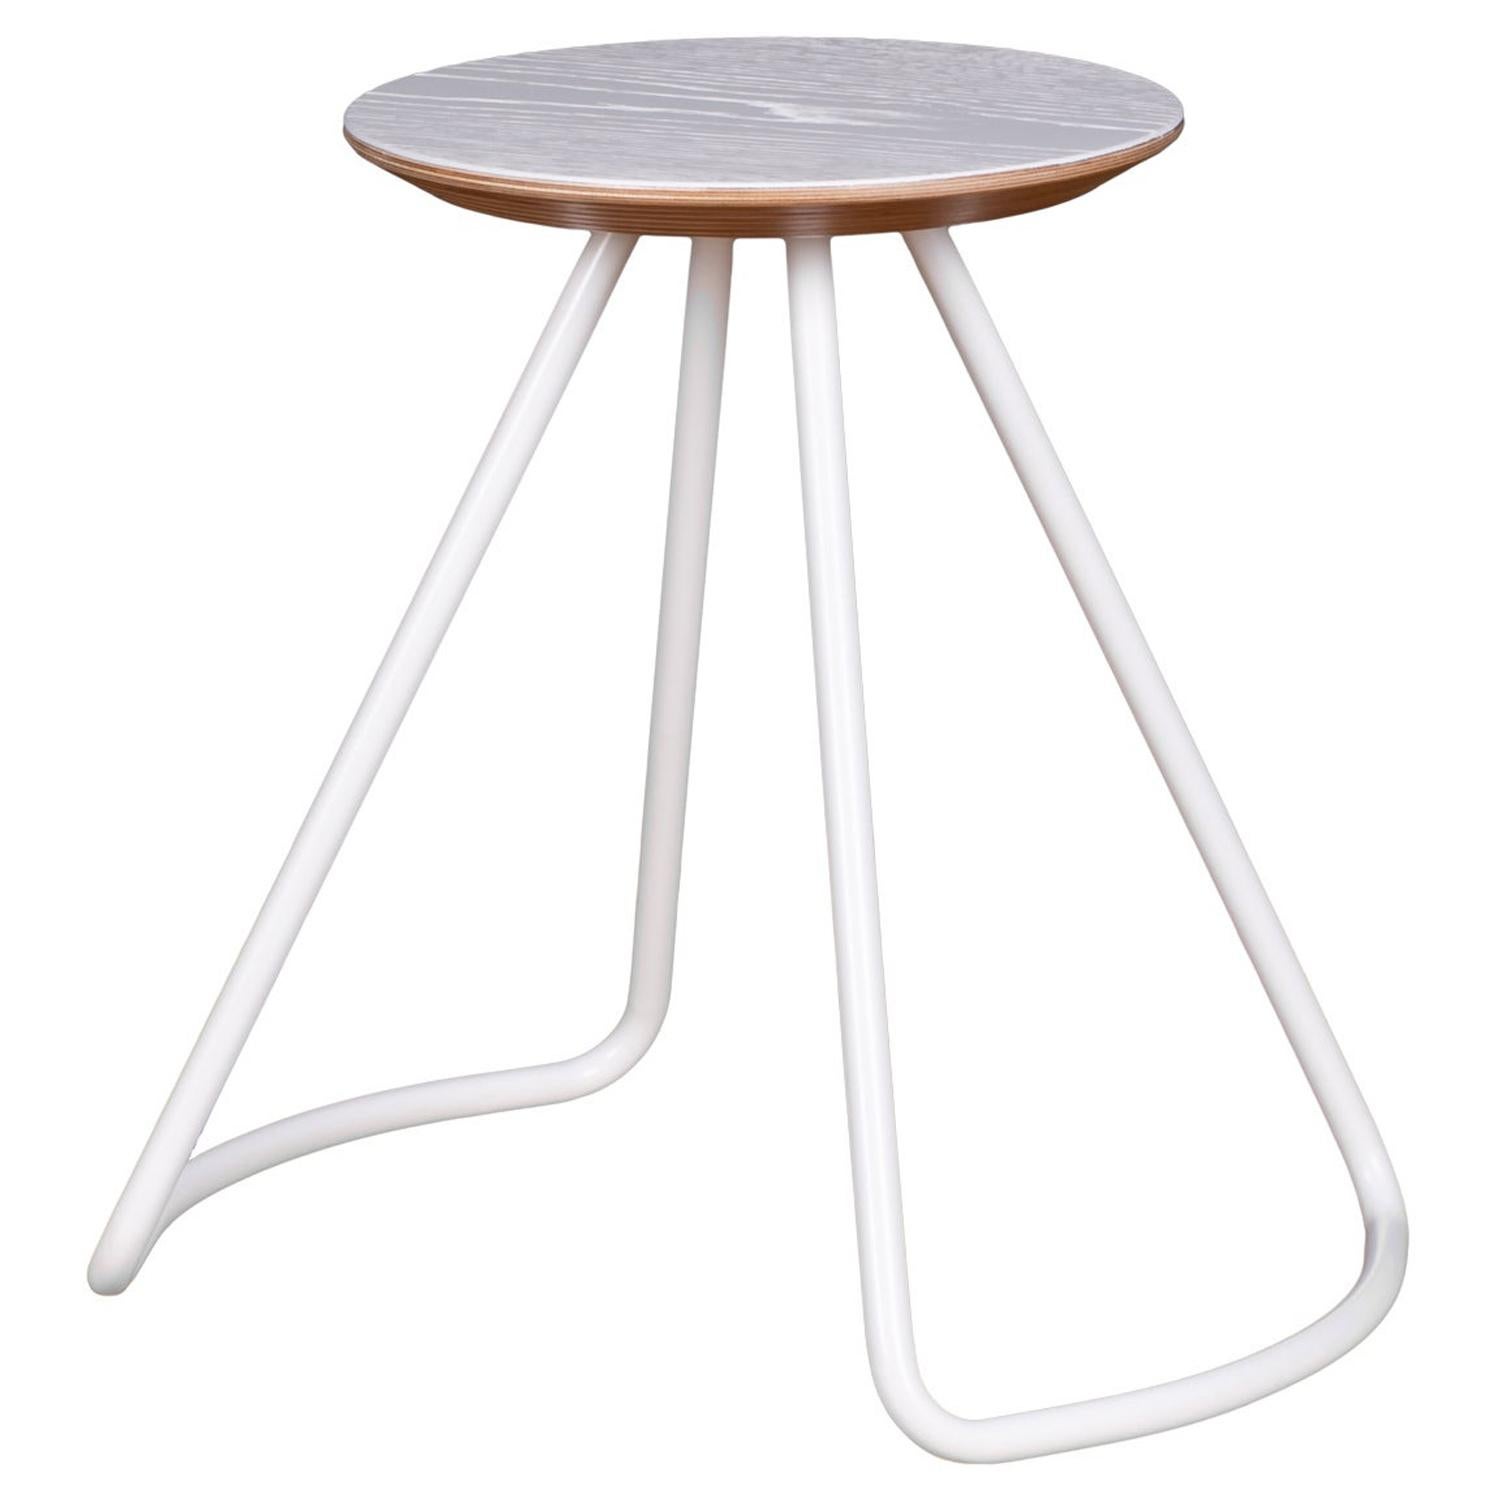 Tabouret/table Sama en chêne blanc et métal blanc, moderne contemporain et minimaliste